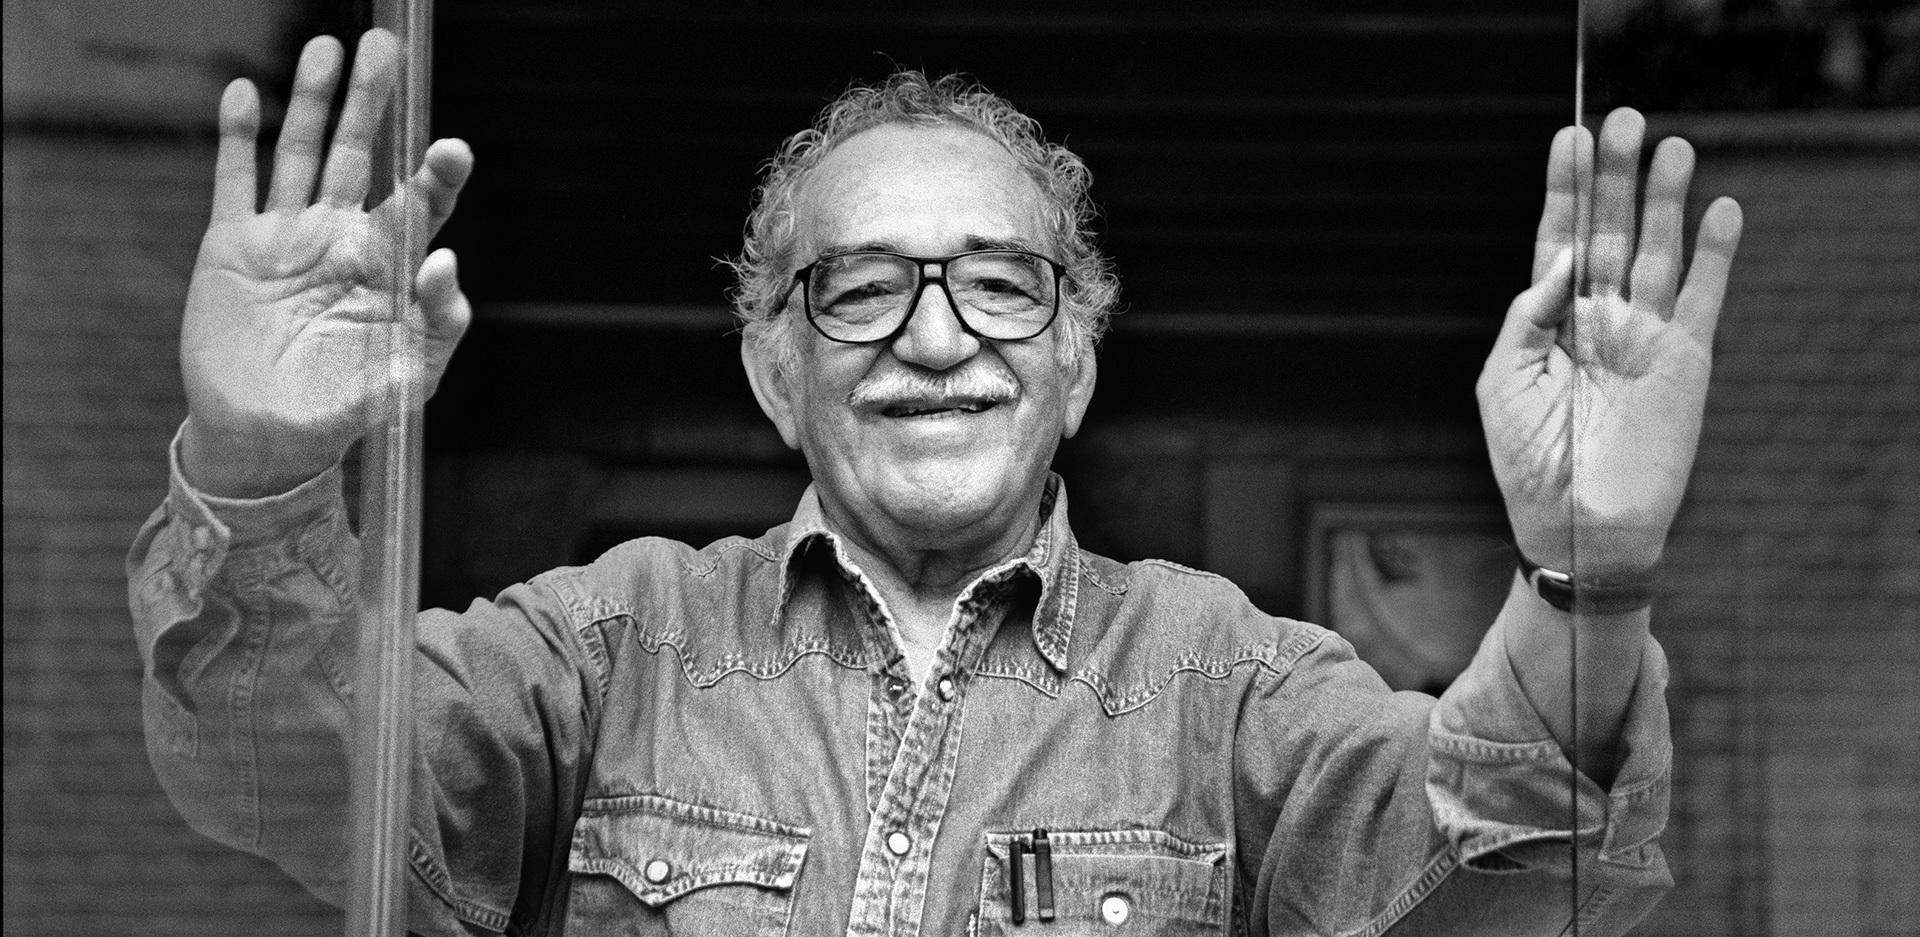 Γκάμπριελ Γκαρσία Μάρκες: Ο φίλος του ζωγράφος Δημήτρης Γέρος γράφει για τις συναντήσεις τους στο Μεξικό και στην Κολομβία.